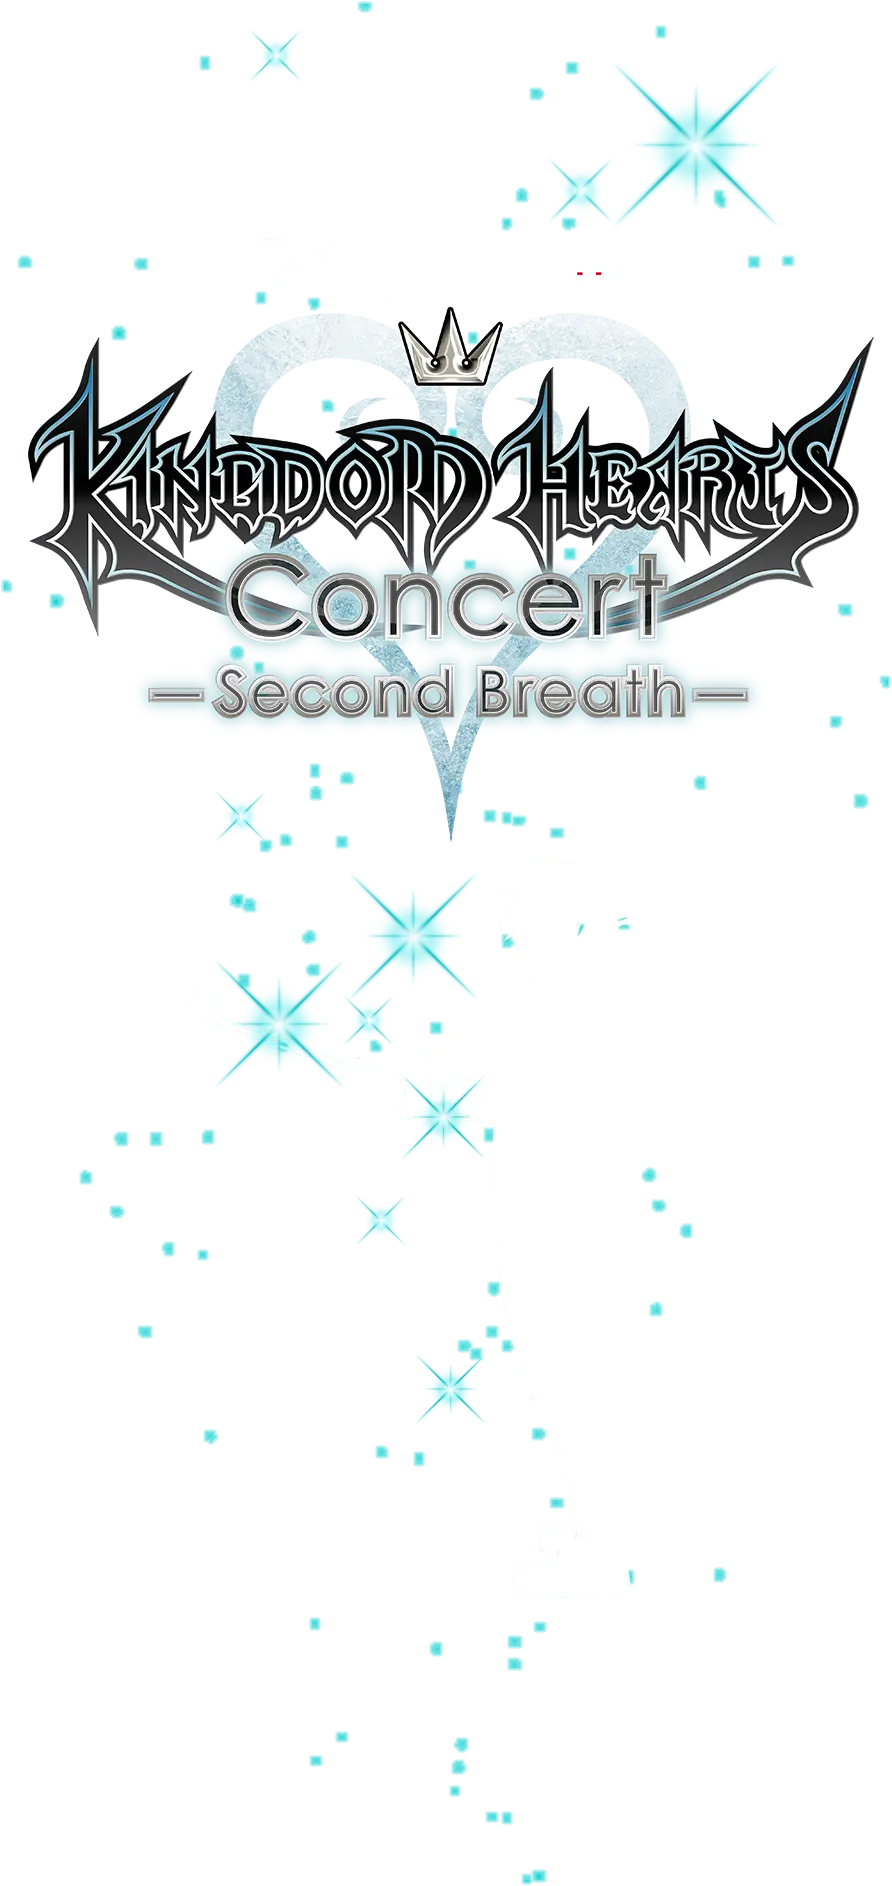 KINGDOM HEARTS Concert -Second Breath- | SQUARE ENIX